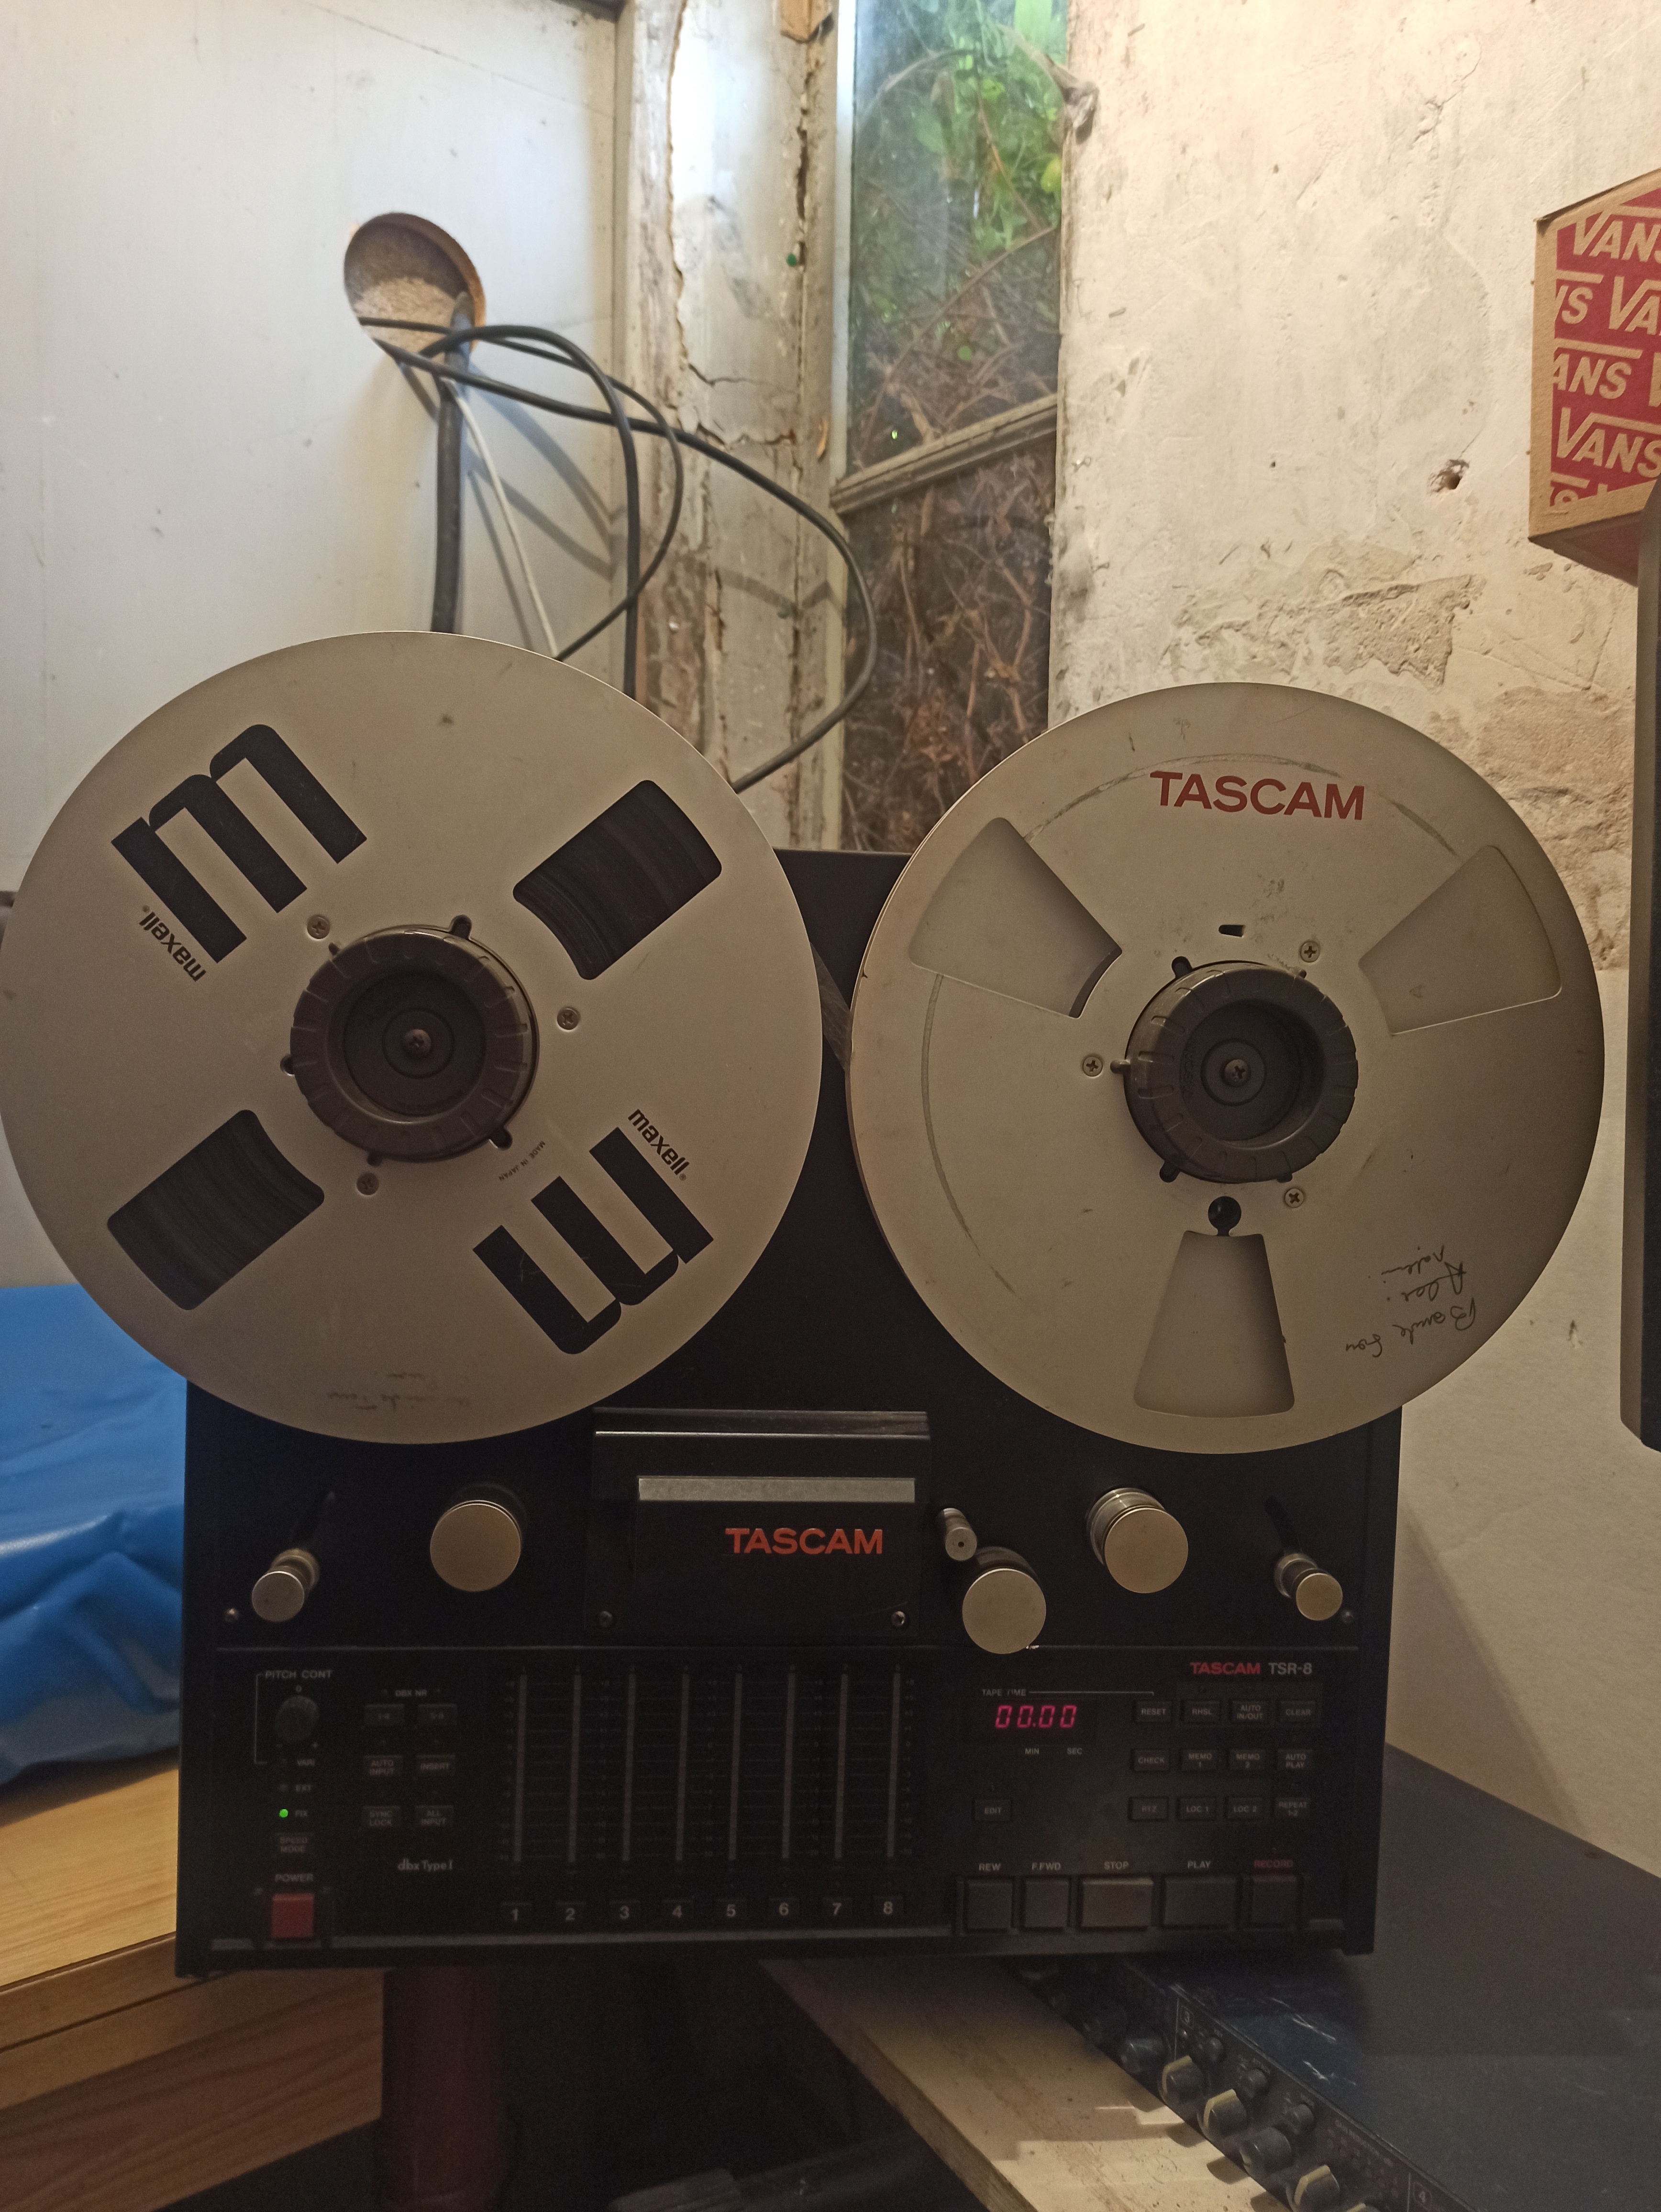 Tascam TSR-8 8-track analog recorder 